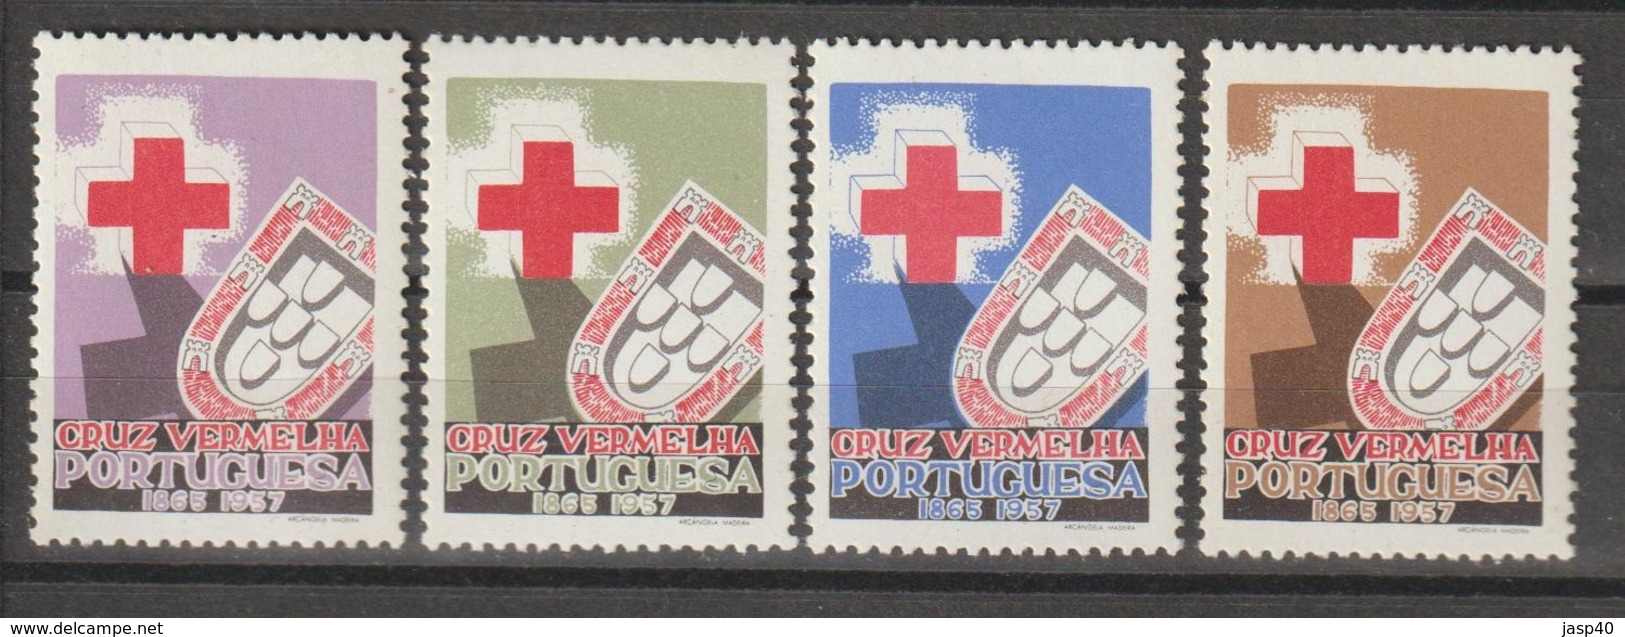 PORTUGAL - CRUZ VERMELHA EMISSÃO DE 1957 - Unused Stamps